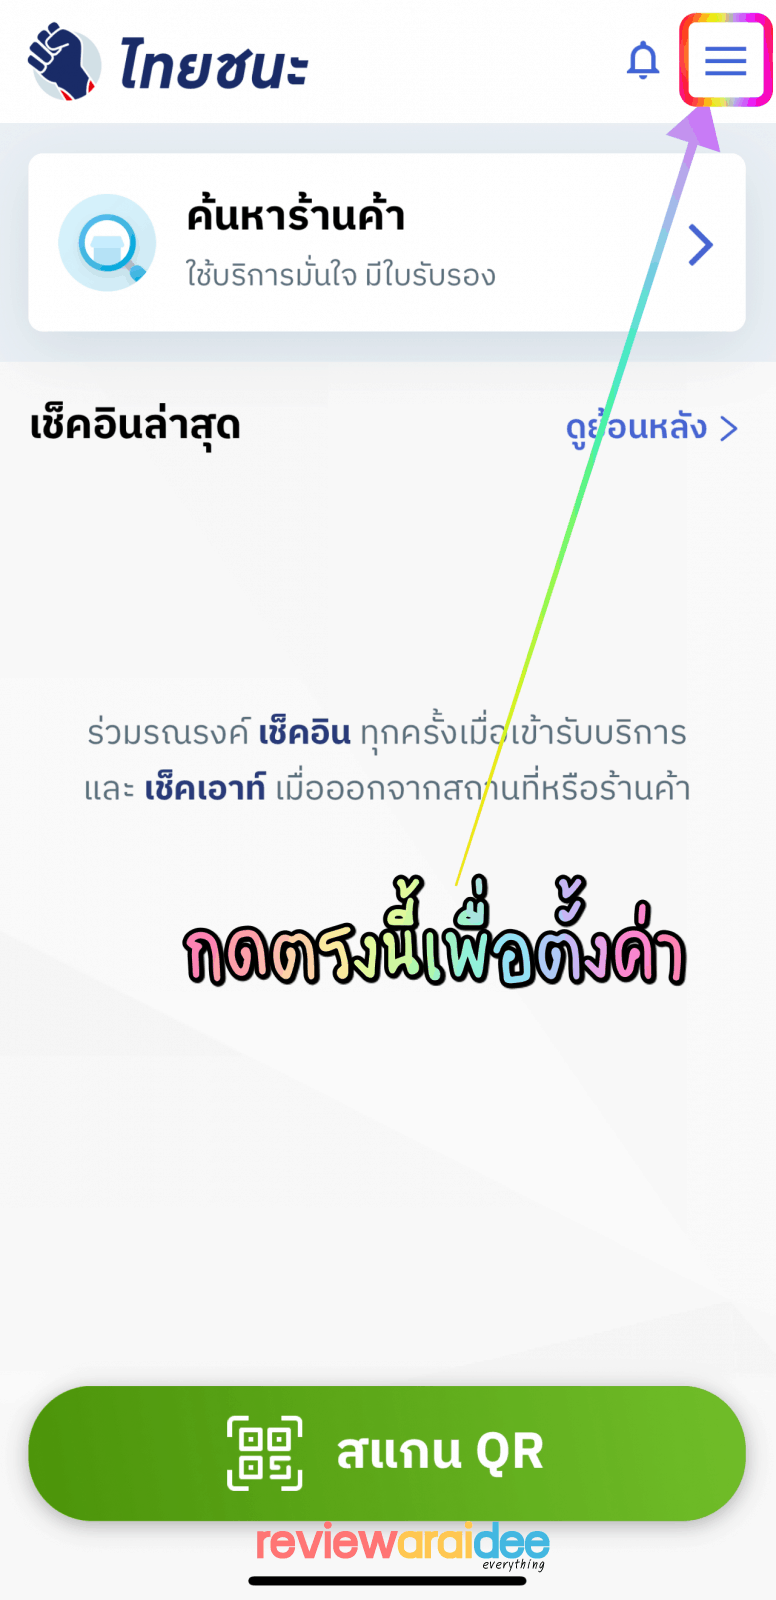 #สรุปให้ แอปไทยชนะ thaichana เวอร์ชั่น 1.7 แสดงประวัติเช็คอินย้อนหลัง 14 วัน